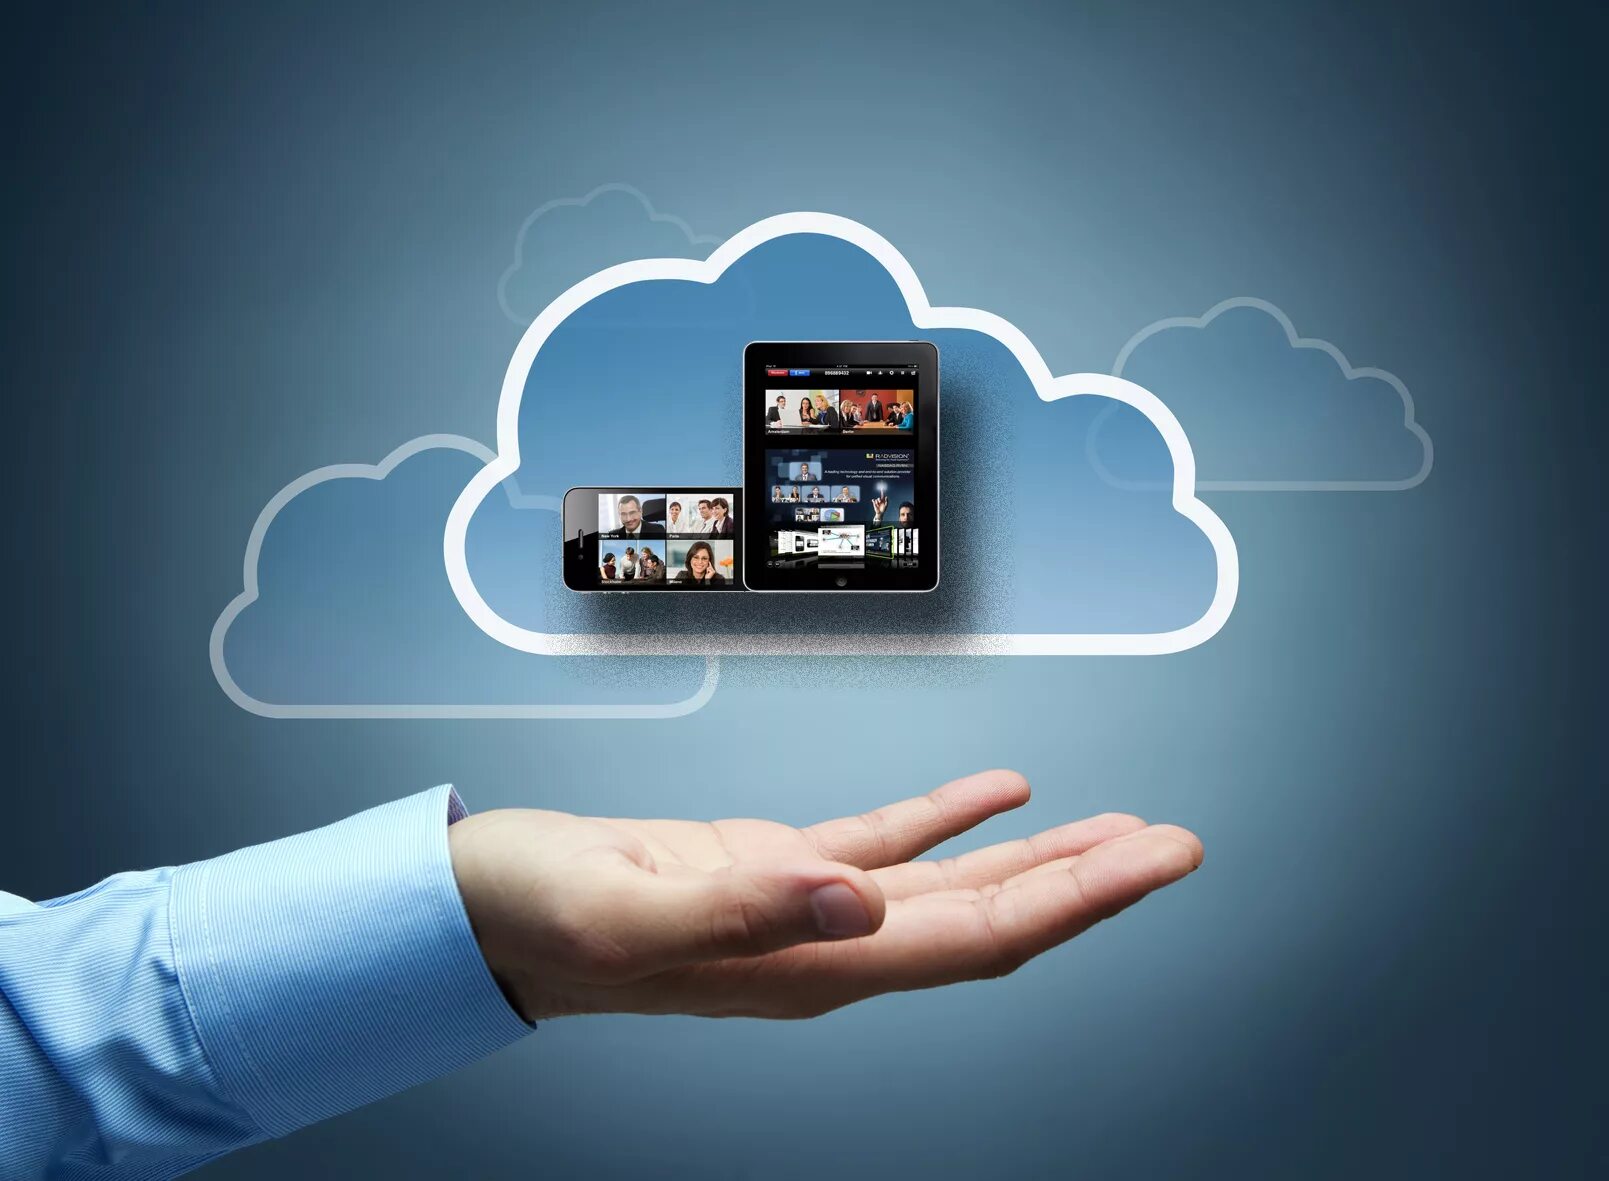 Cloud applications. Облачные технологии. Преимущества облачных вычислений. Реклама облачных технологий. Мобильные и облачные технологии.